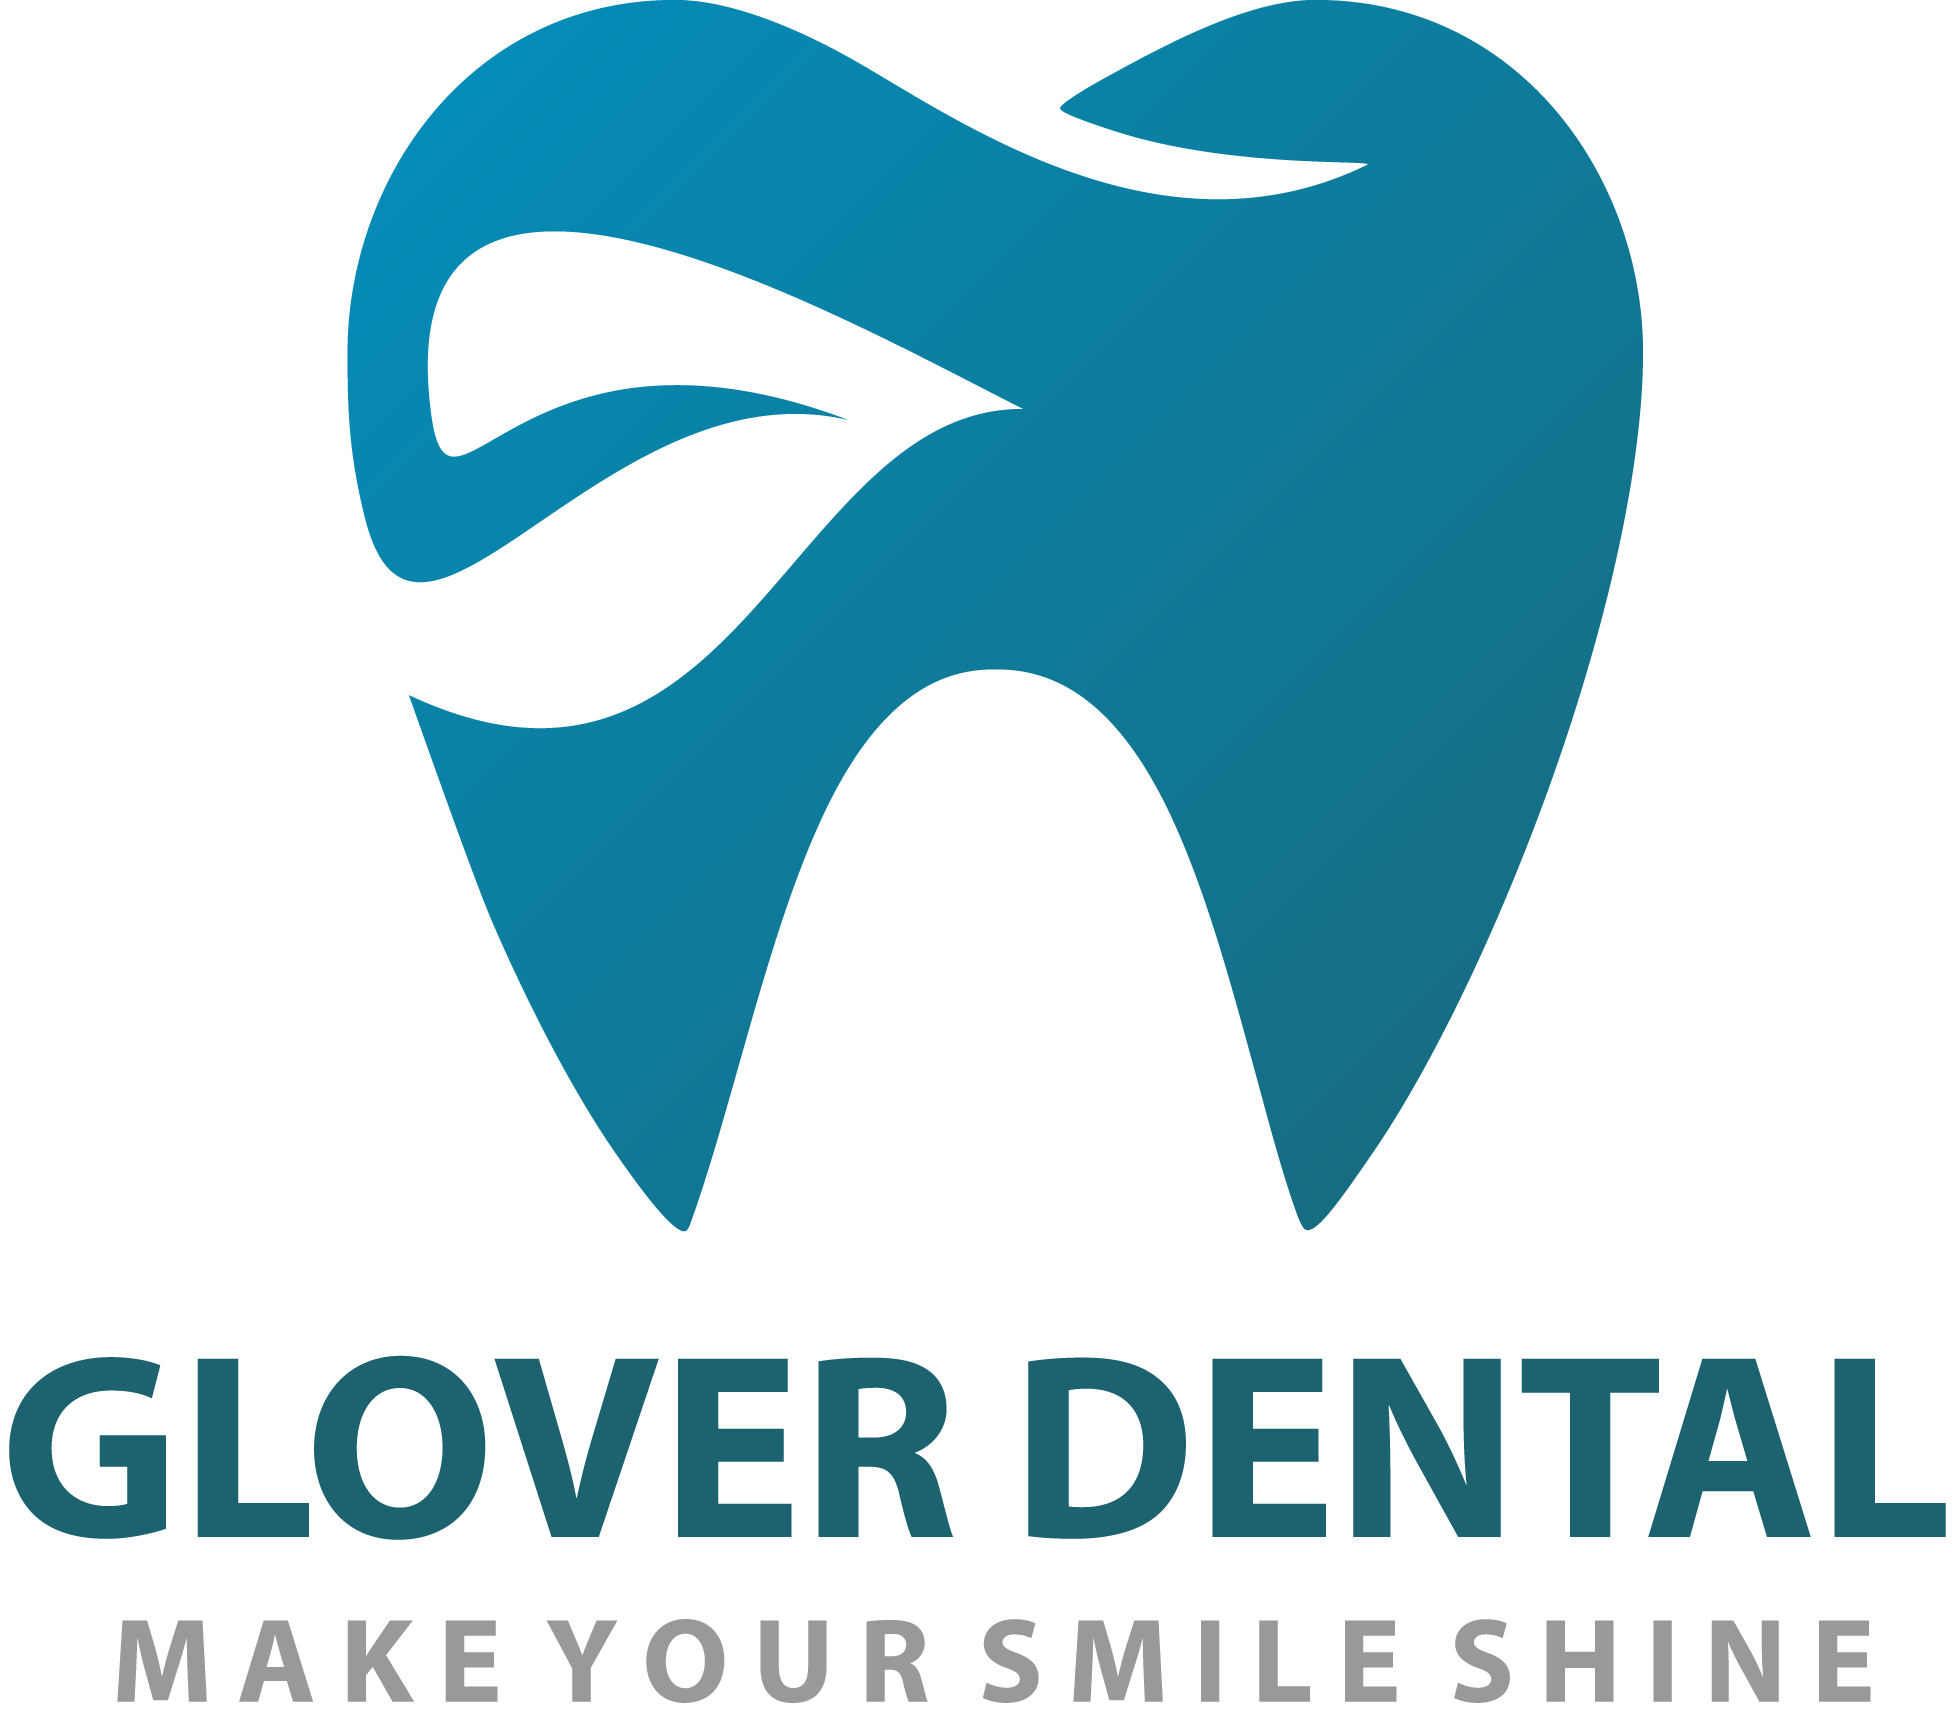 Before&After – Glover Dental